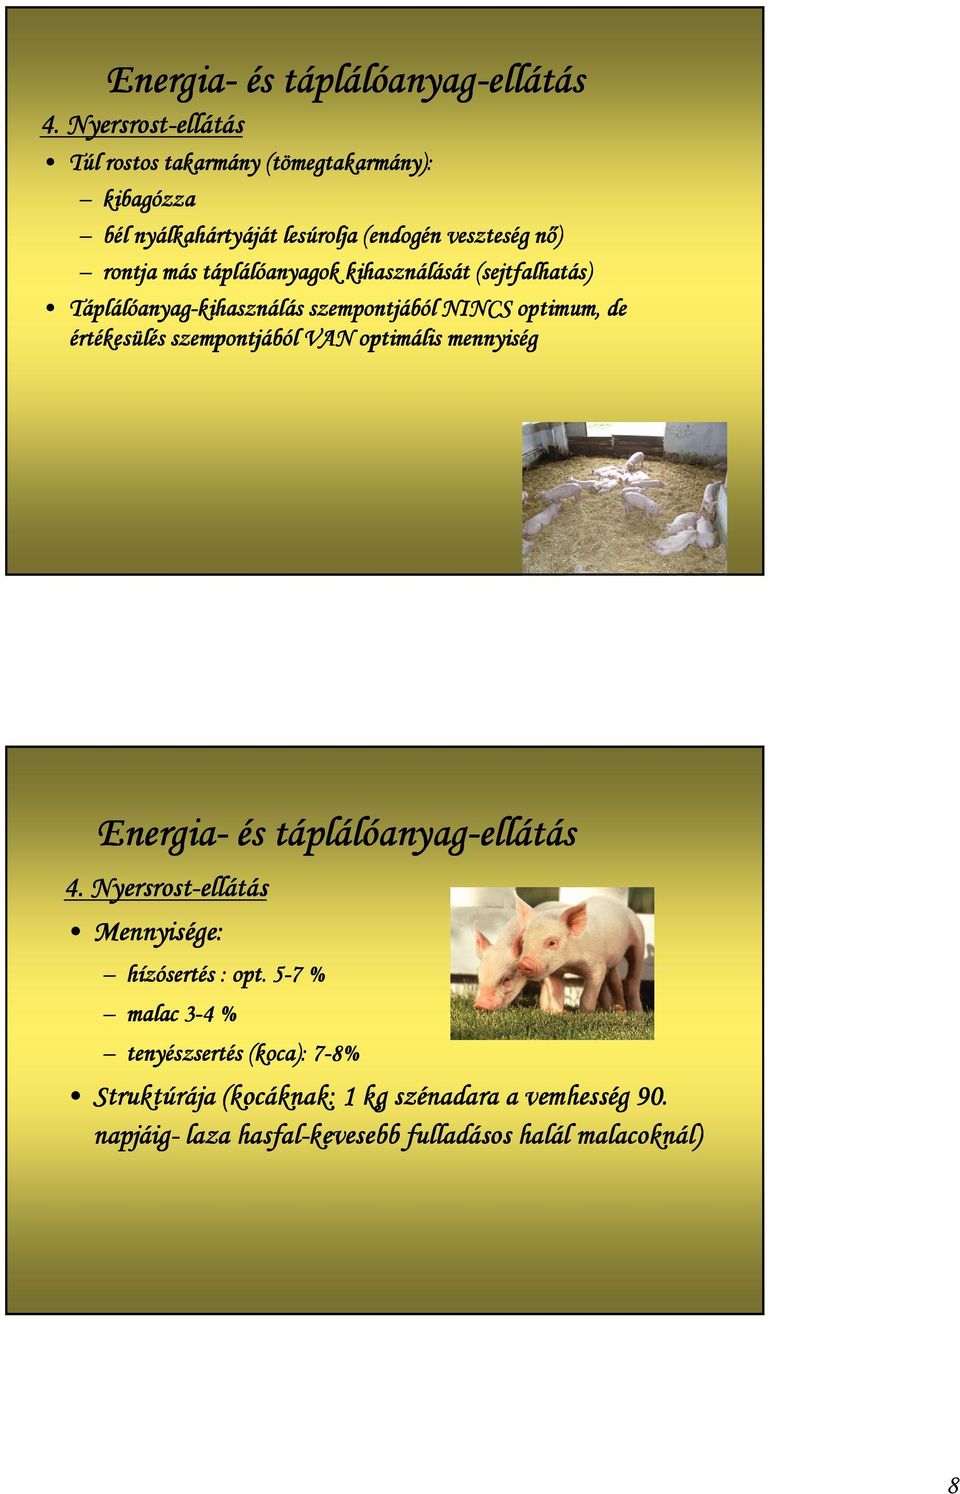 táplálóanyagok kihasználását (sejtfalhatás) Táplálóanyag-kihasználás szempontjából NINCS optimum, de értékesülés szempontjából VAN